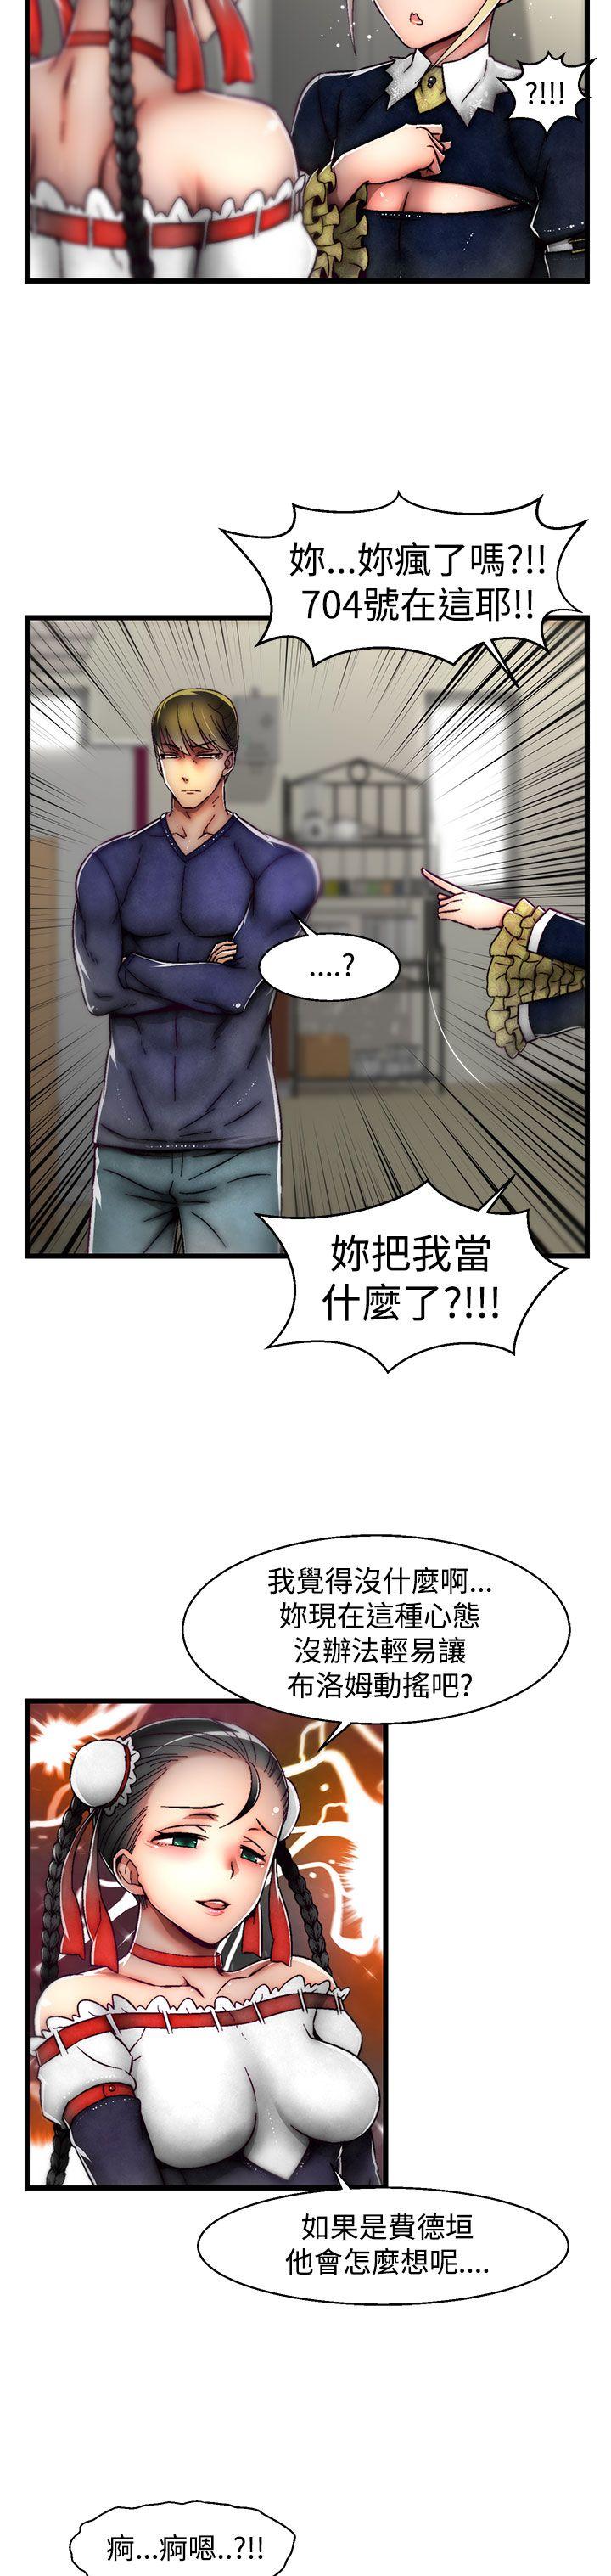 韩国污漫画 啪啪啪調教所 第21话(第2季) 24